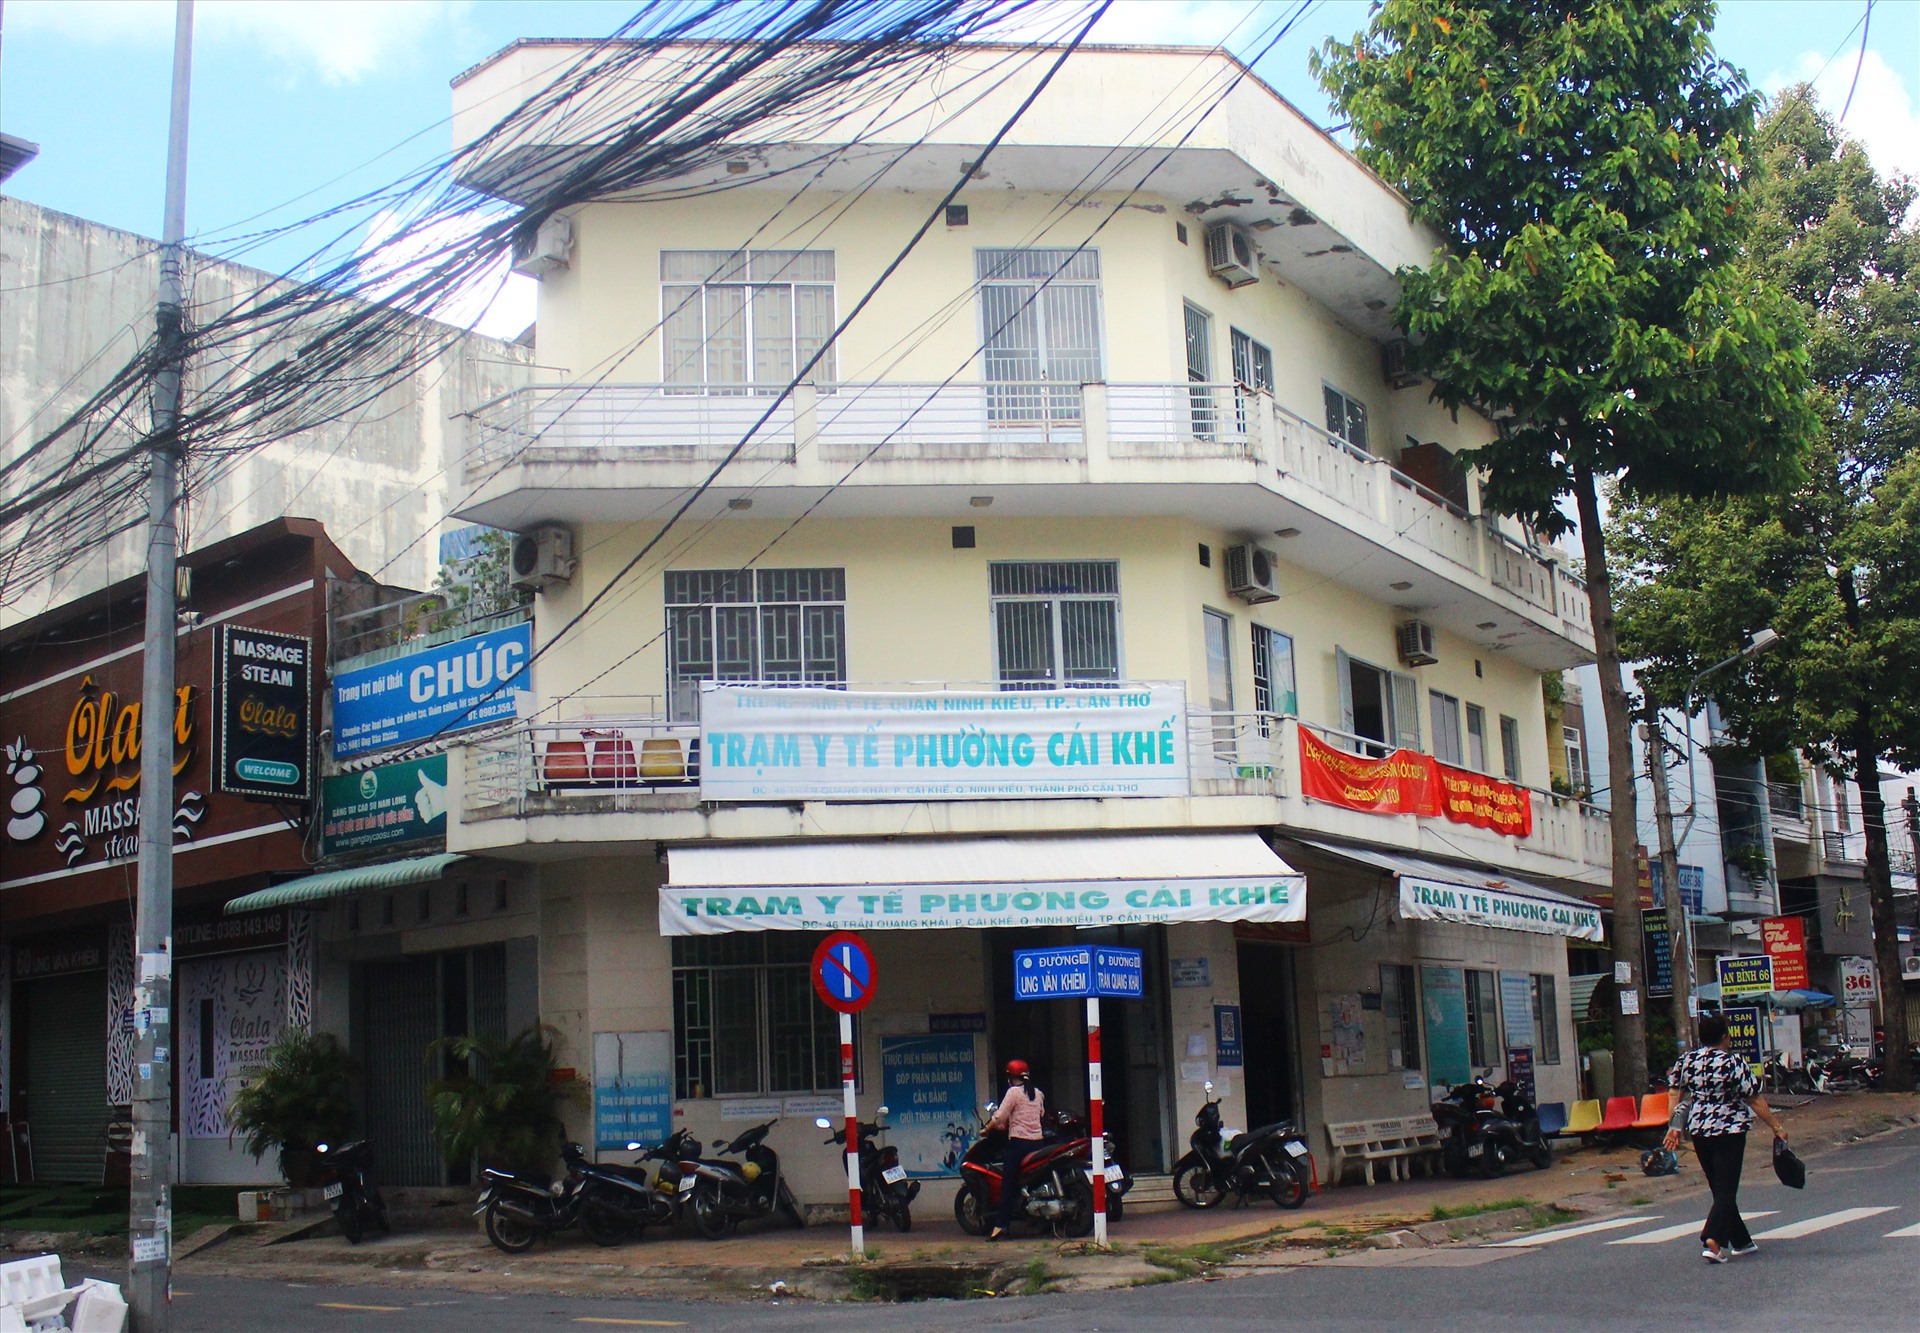 Trạm y tế phường Cái Khế, quận Ninh Kiều, TP Cần Thơ rơi vào cảnh “vắng bóng“. Ảnh: Bích Ngọc